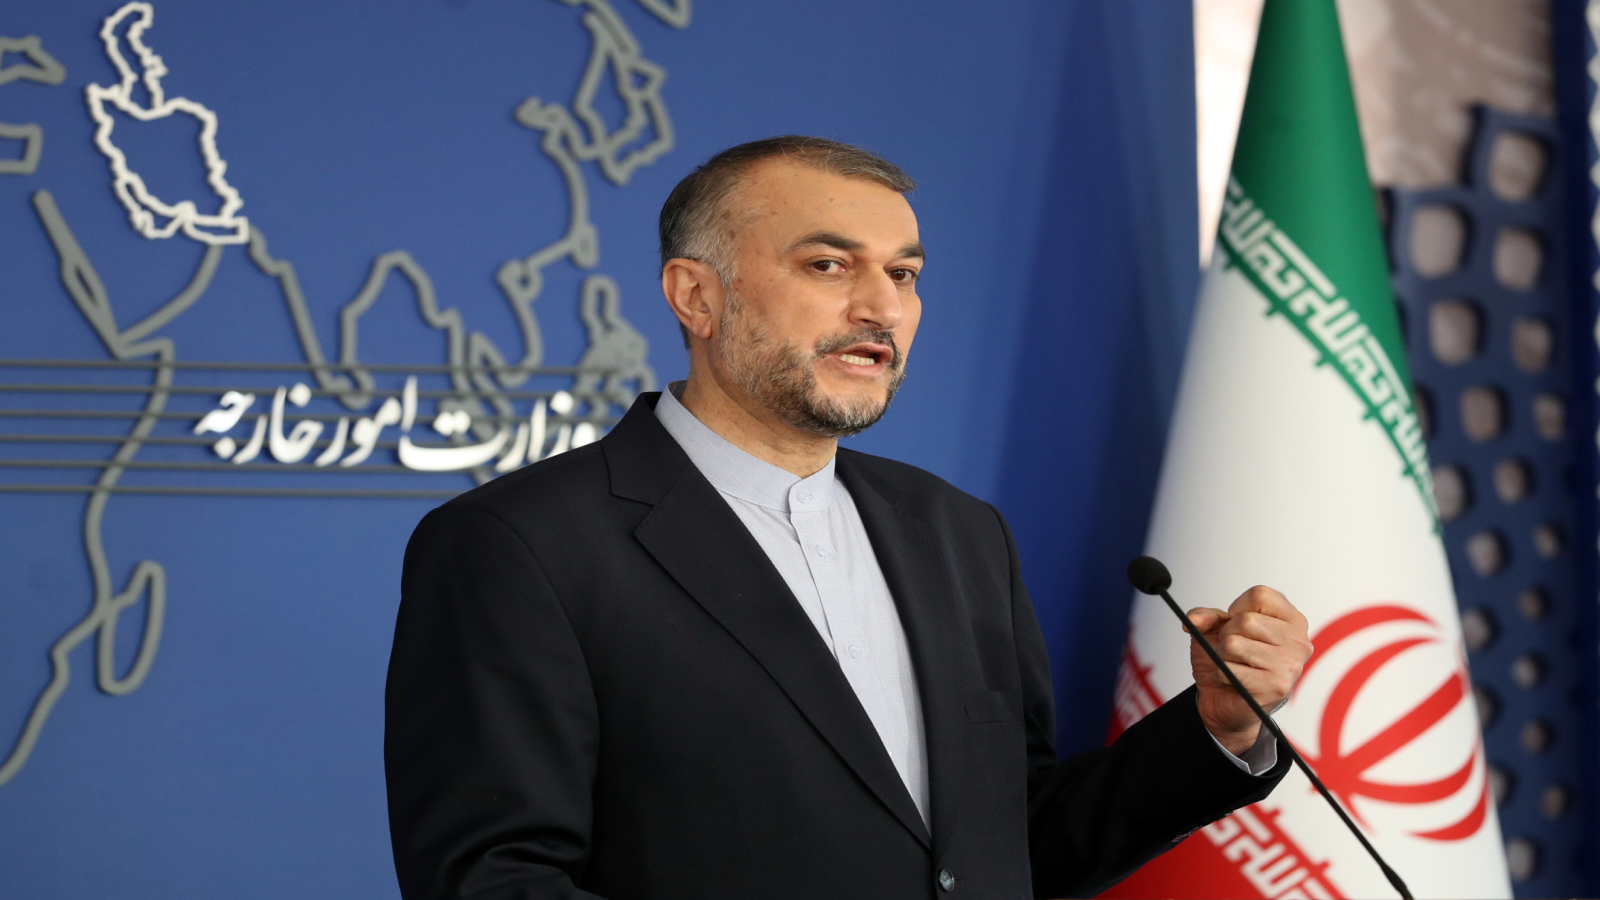 طهران تطالب واشنطن بتحرير 10 مليارات دولار..لاستئناف مفاوضات فيينا